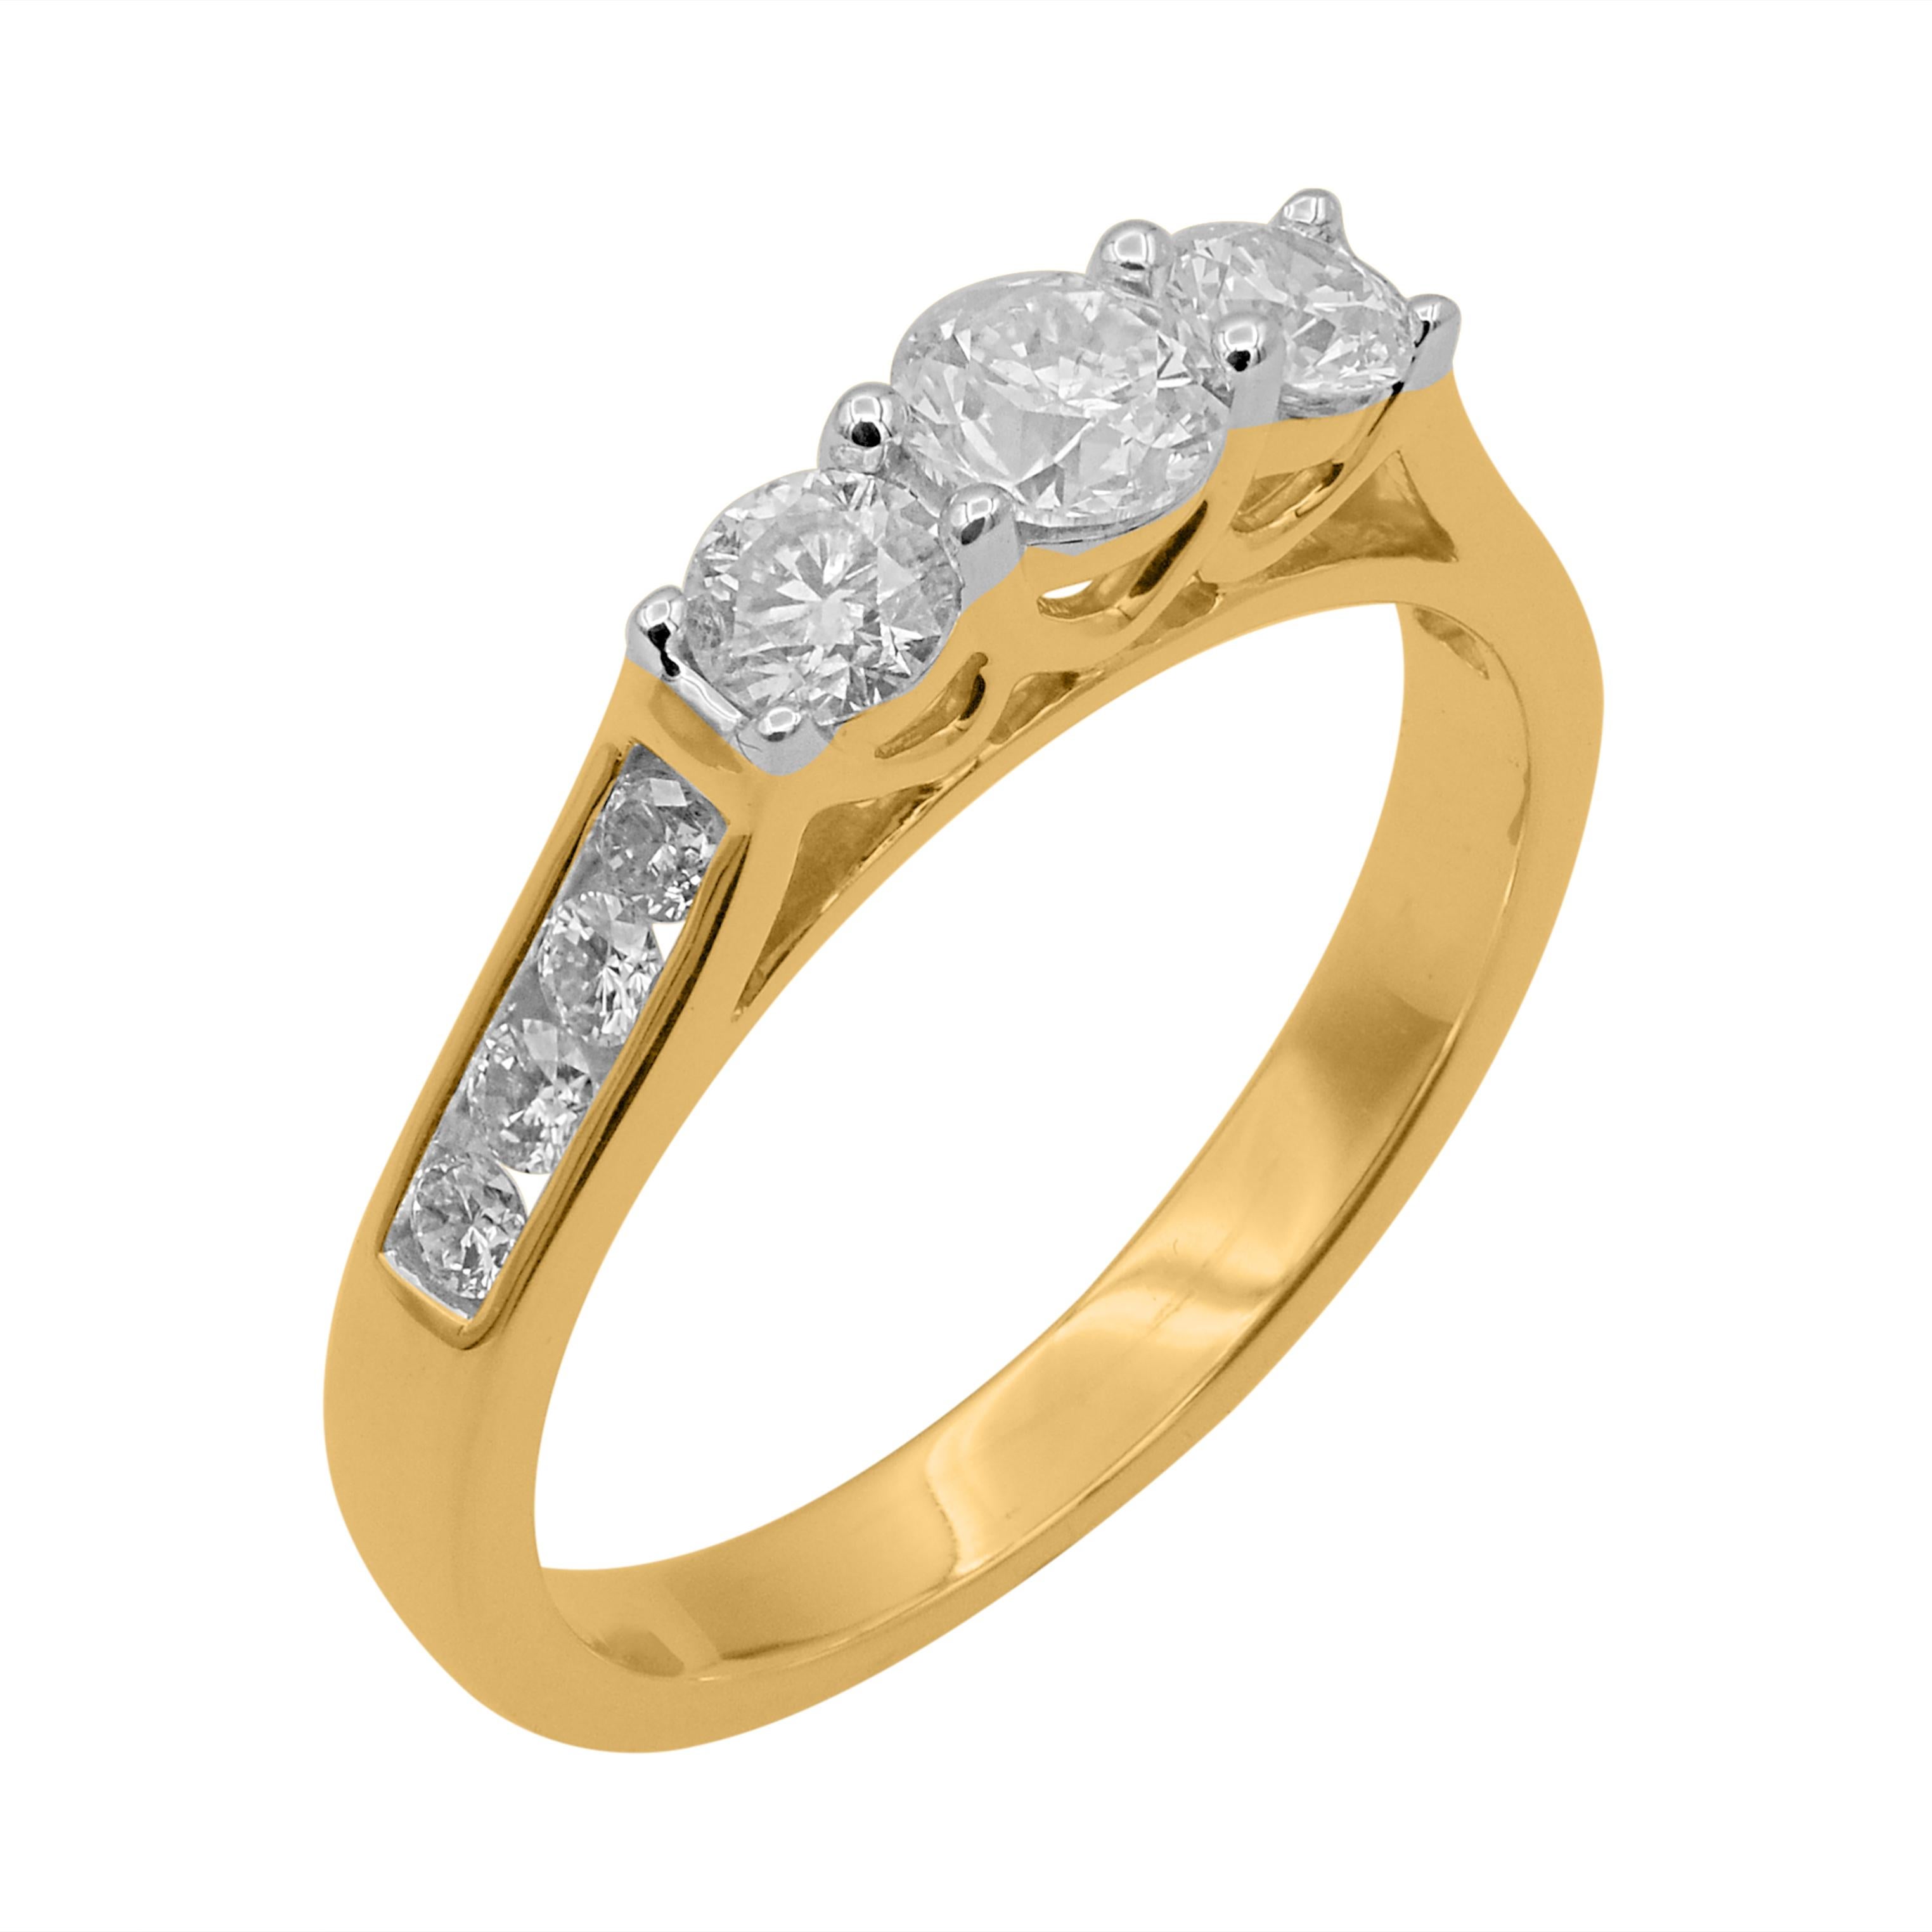 Wunderschön, mit einem klassischen Diamantring mit drei Steinen. Diese Verlobungsringe sind mit 11 runden Diamanten im Brillantschliff in Zacken- und Kanalfassung besetzt. Der Ring ist aus 14 Karat Gelbgold gefertigt. Die weißen Diamanten sind mit